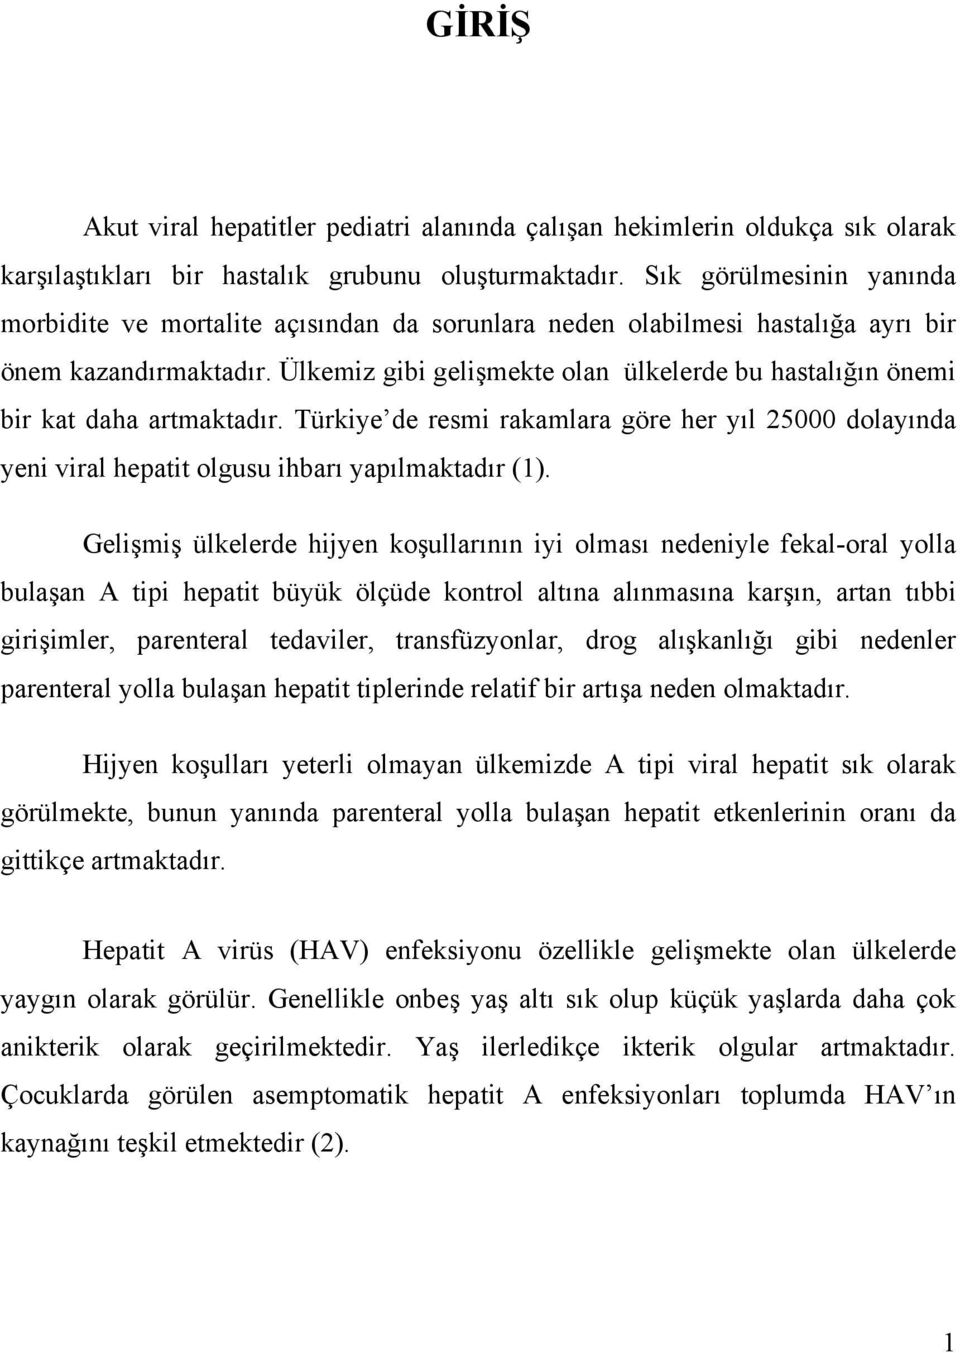 Ülkemiz gibi gelişmekte olan ülkelerde bu hastalığın önemi bir kat daha artmaktadır. Türkiye de resmi rakamlara göre her yıl 25000 dolayında yeni viral hepatit olgusu ihbarı yapılmaktadır (1).